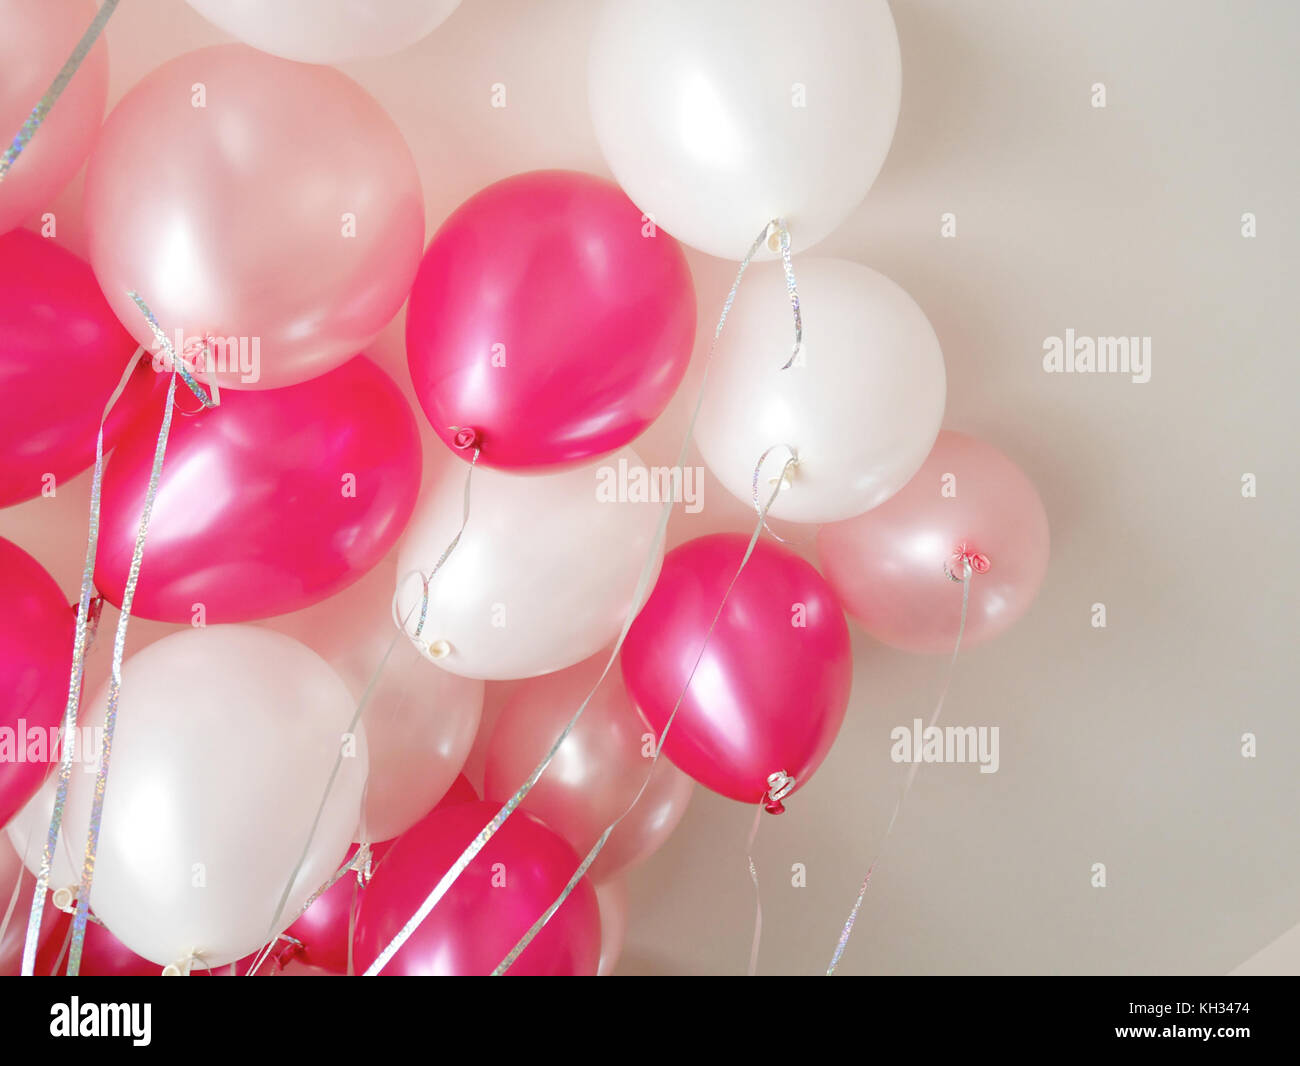 Ballons roses et blancs doux pour partie de la décoration de l'intérieur Banque D'Images